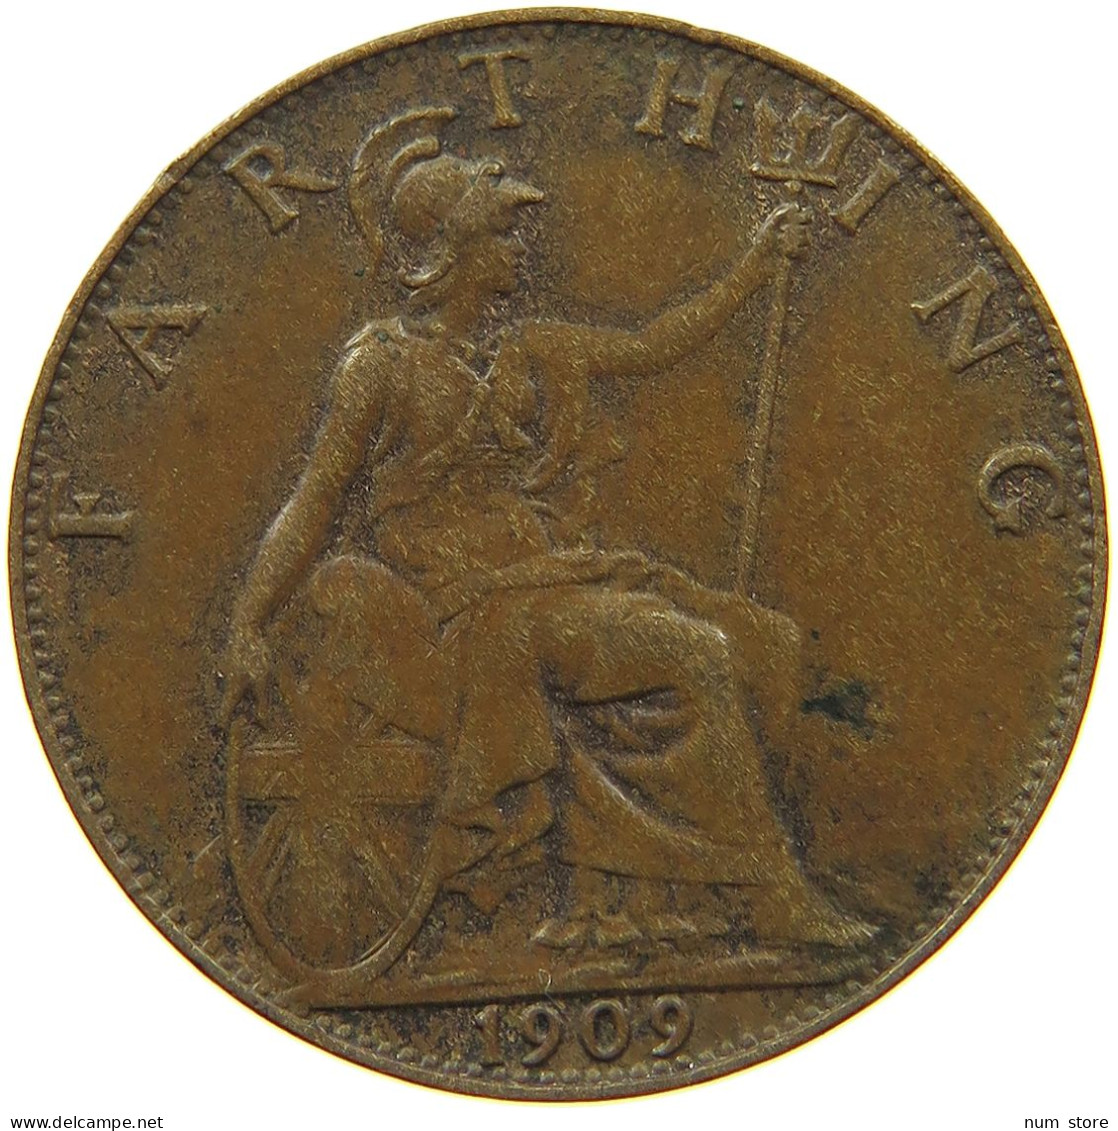 GREAT BRITAIN FARTHING 1909 Edward VII., 1901 - 1910 #t152 0169 - B. 1 Farthing